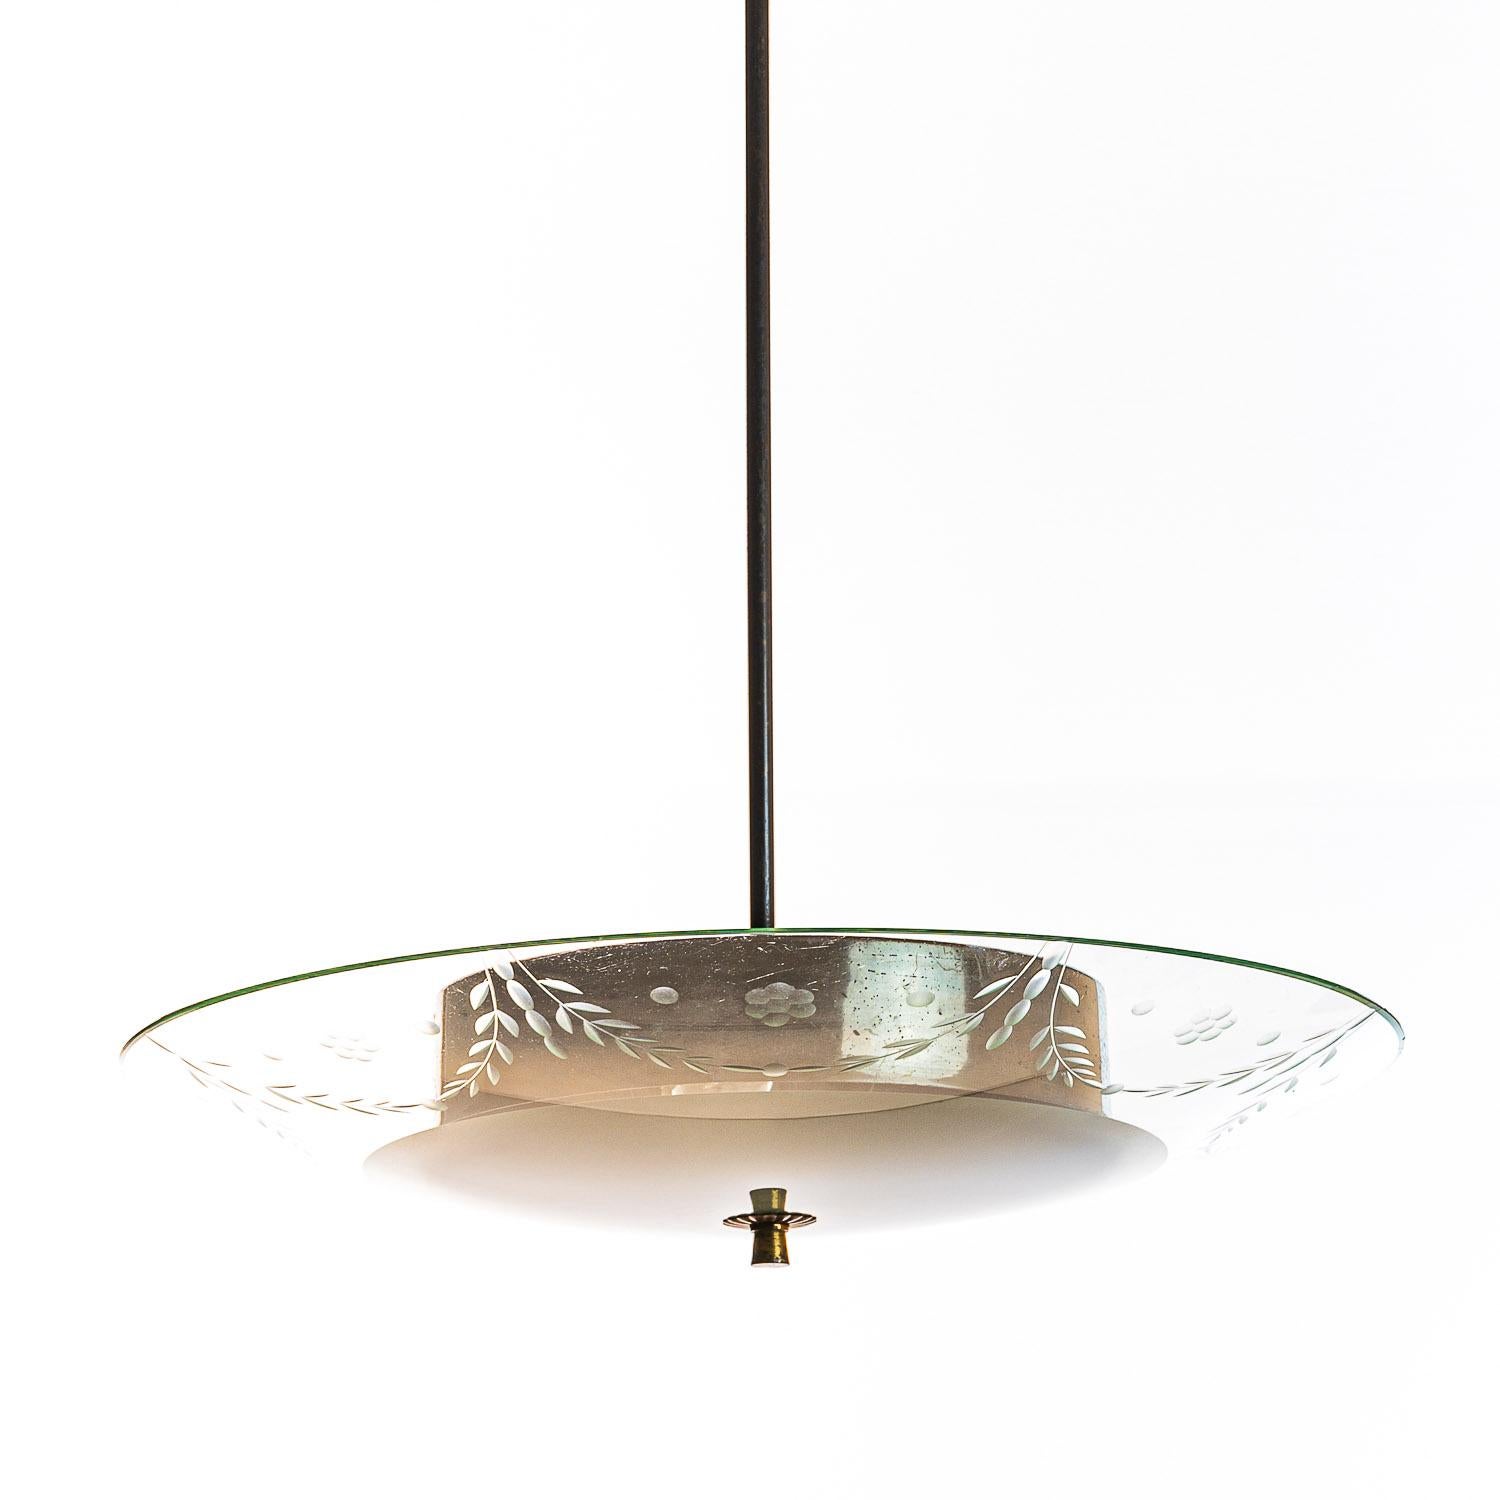 Dieses elegante Stück besteht aus einem Messingrahmen und einem einzigartigen Reflektor aus mattiertem und satiniertem Glas. 
Der runde, gewölbte Glasreflektor, der teilweise mit floralen Motiven geätzt ist, ist unter einem runden Metallstück